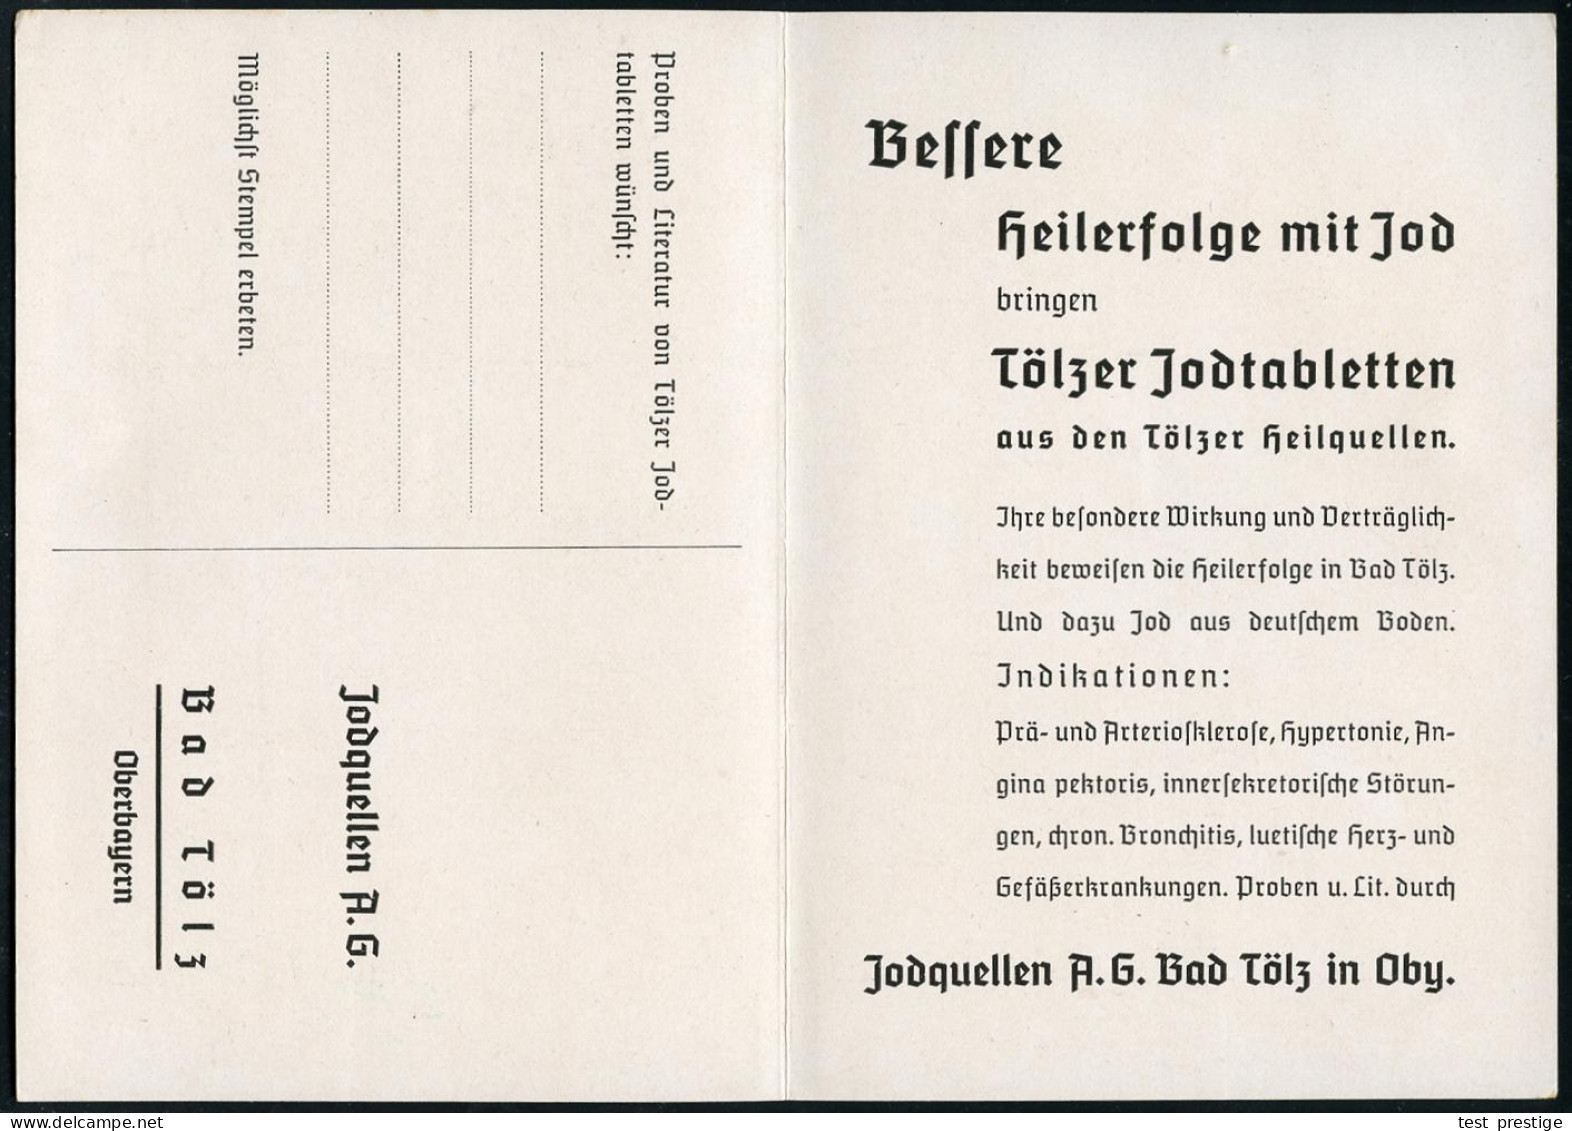 BAD TÖLZ/ *1*/ GEGEN/ ADERVER/ KALKUNG/ UND/ BLUTHOCHDRUCK../ KRANKENHEILER JODQUELLEN AG/ JOD-BAD TÖLZ.. 1936 (13.1.) S - Pharmacie